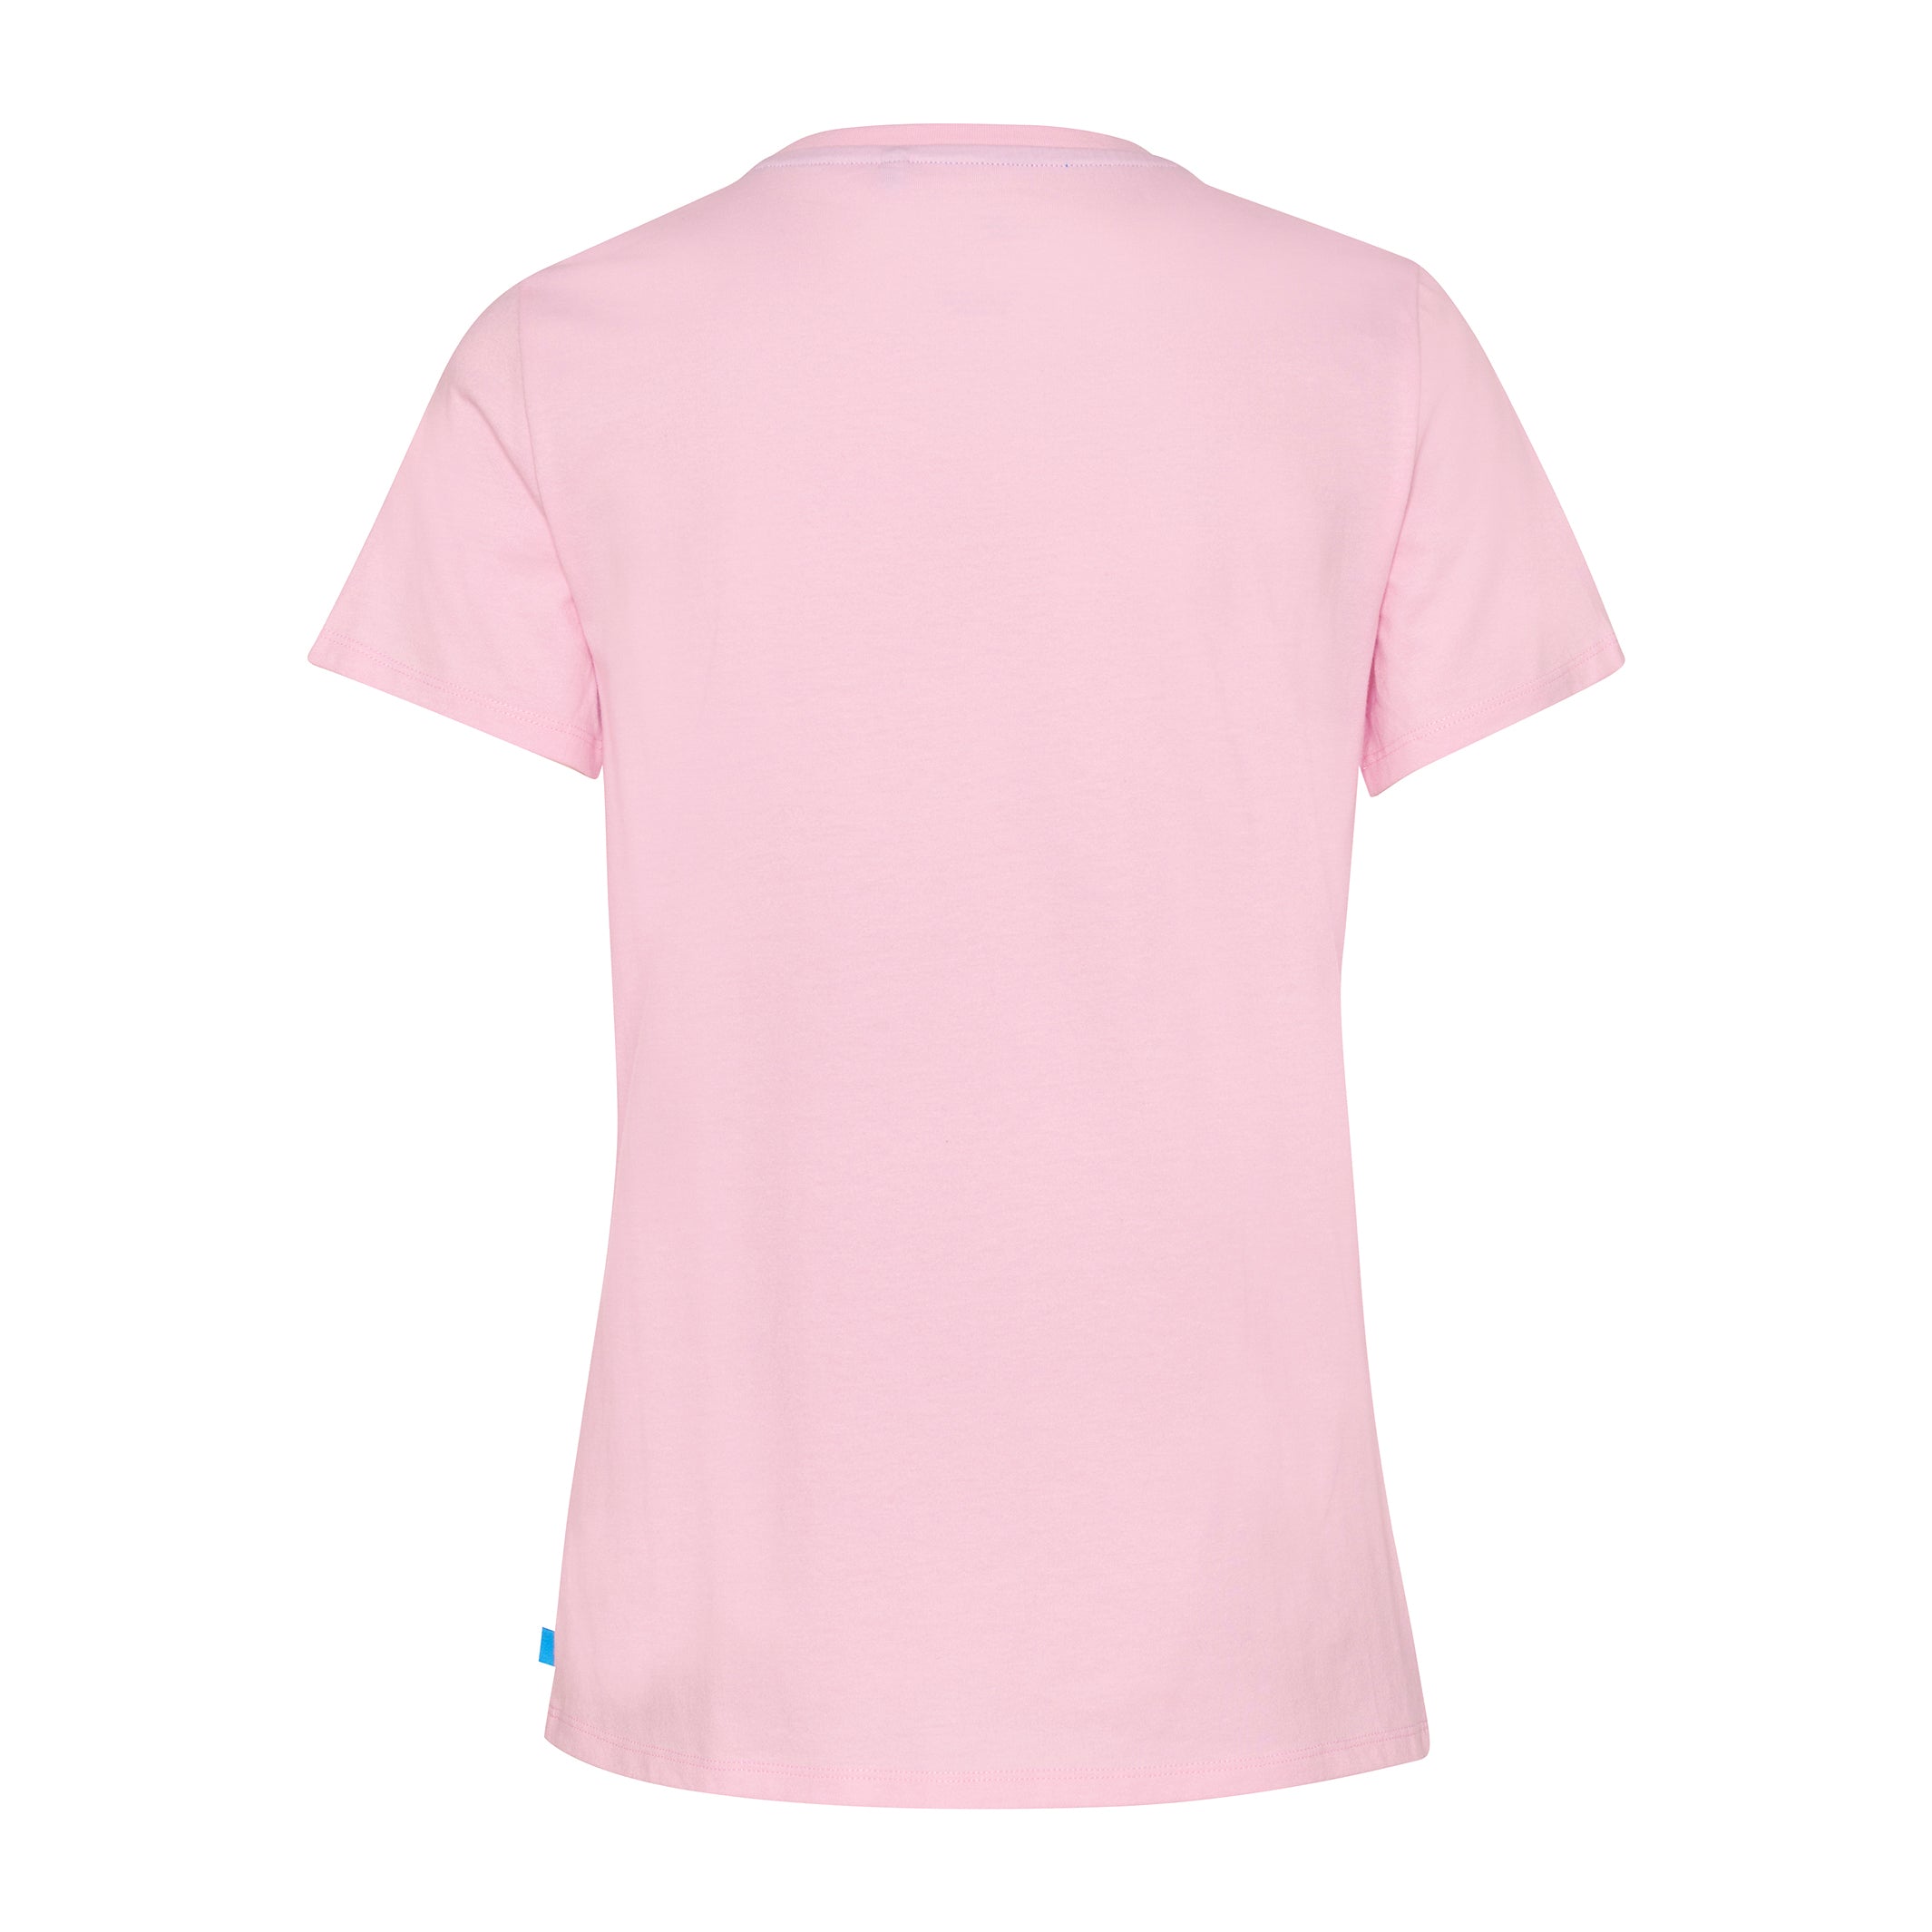 Women's Pink T-Shirt Flower Logo Back View